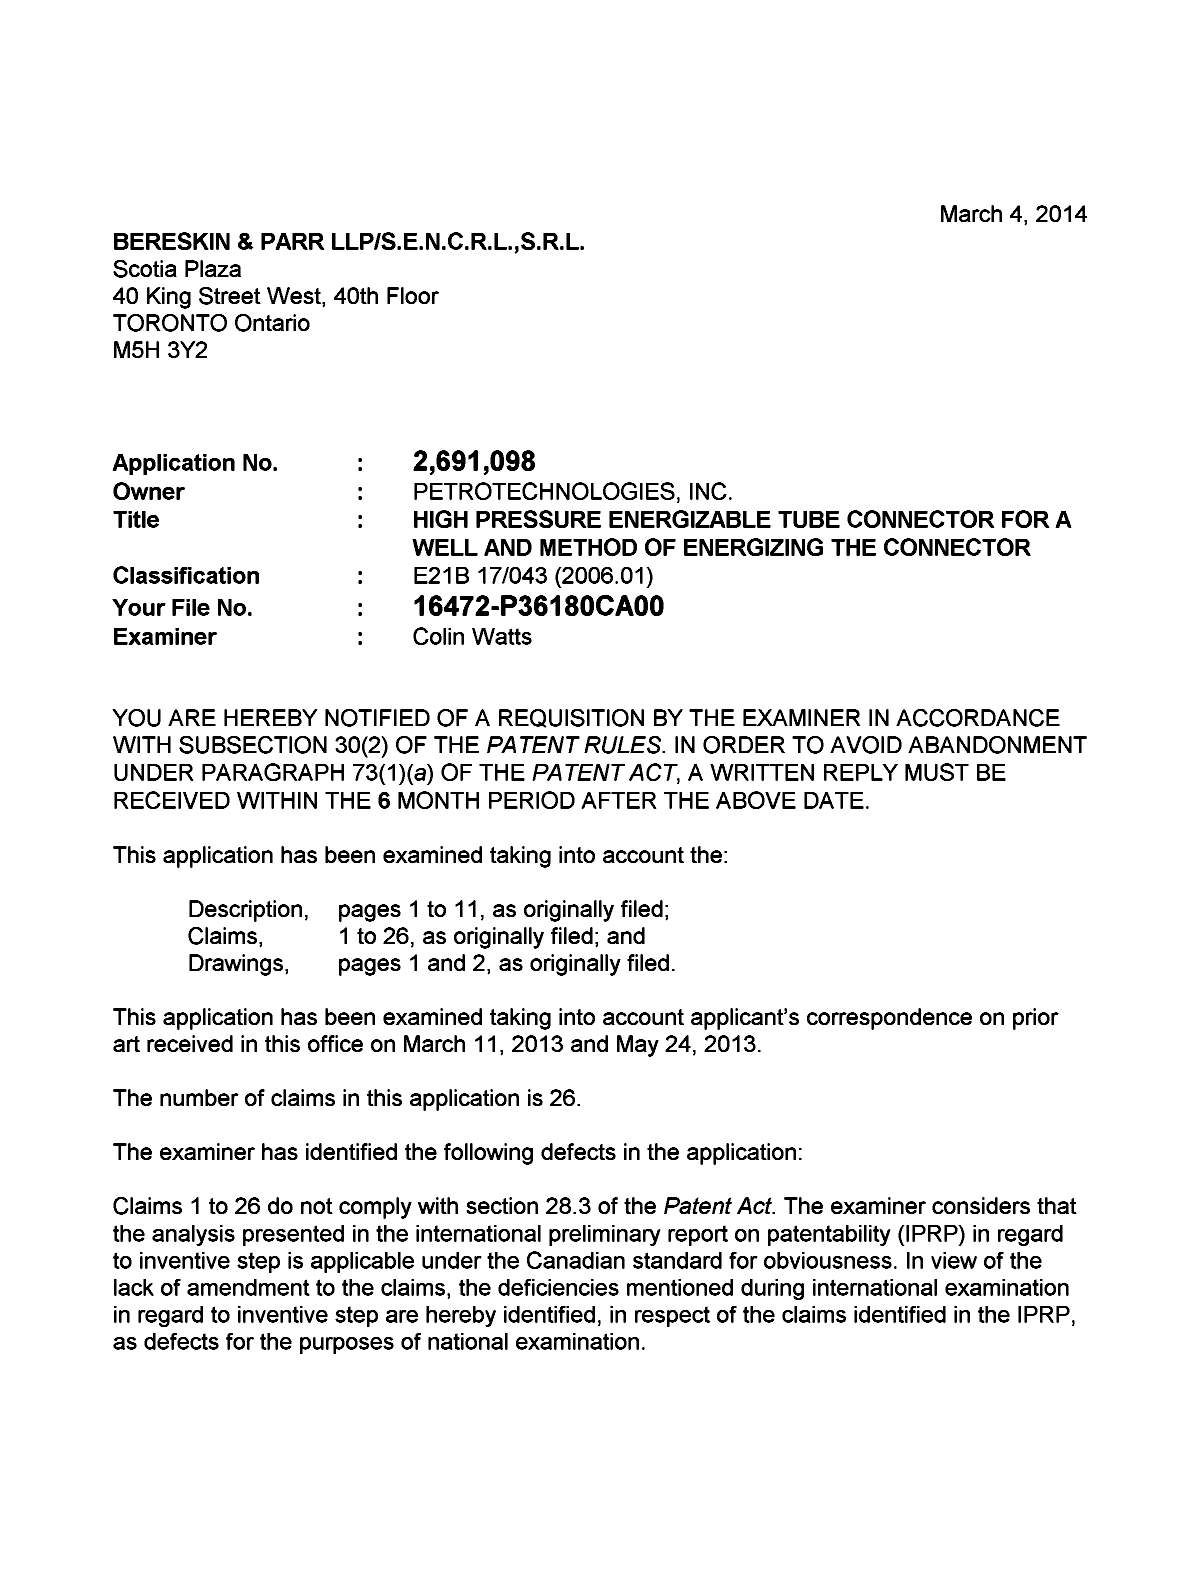 Document de brevet canadien 2691098. Poursuite-Amendment 20140304. Image 1 de 2